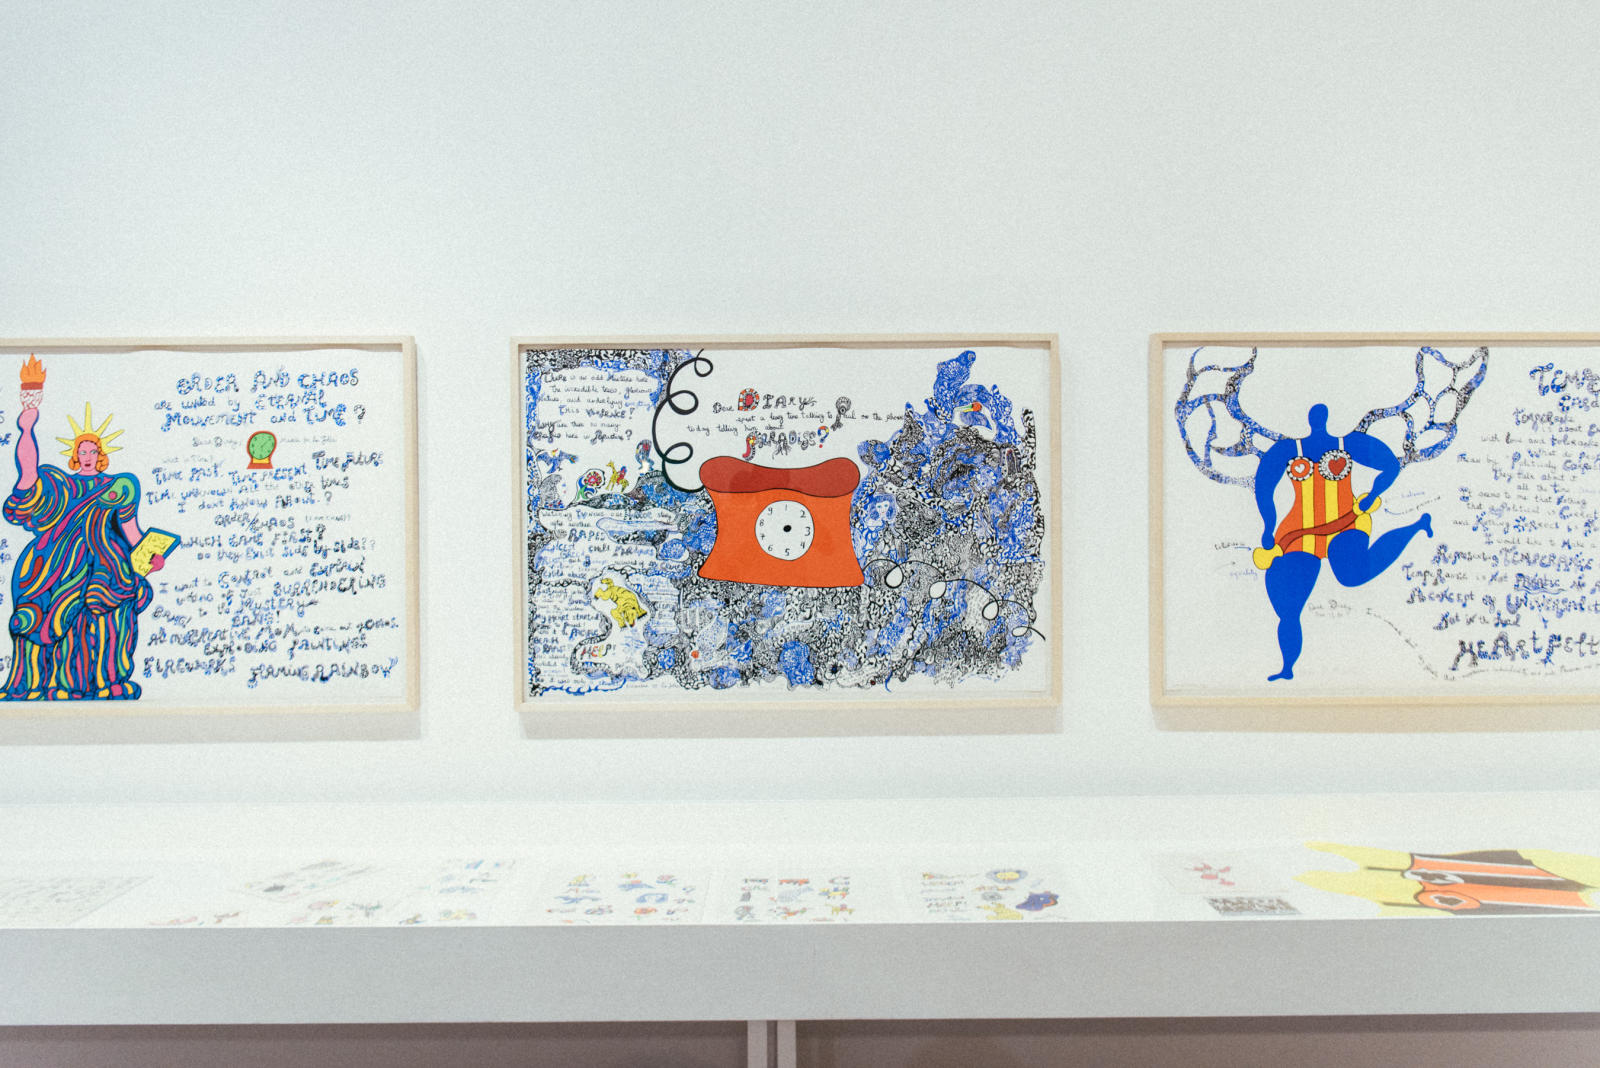 The art works of Niki de Saint Phalle